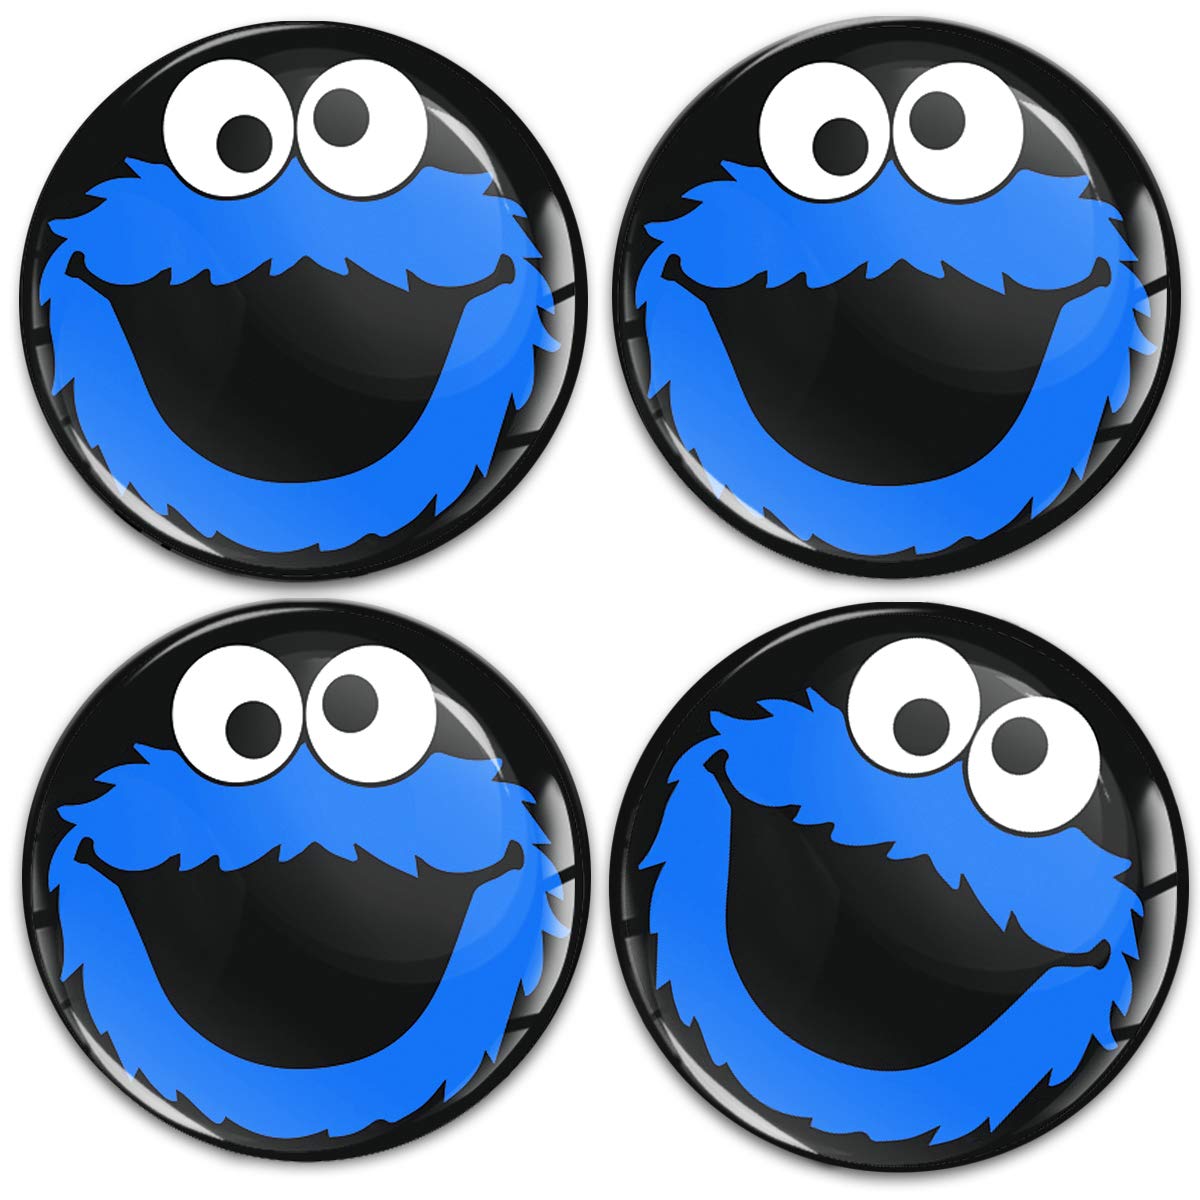 SkinoEu Aufkleber Autoaufkleber für Radkappen Nabenkappen Nabendeckel Radnabendeckel Rad-Aufkleber 55mm Schwarz Blau Elmo Cookie Monster A 5855 von SkinoEu